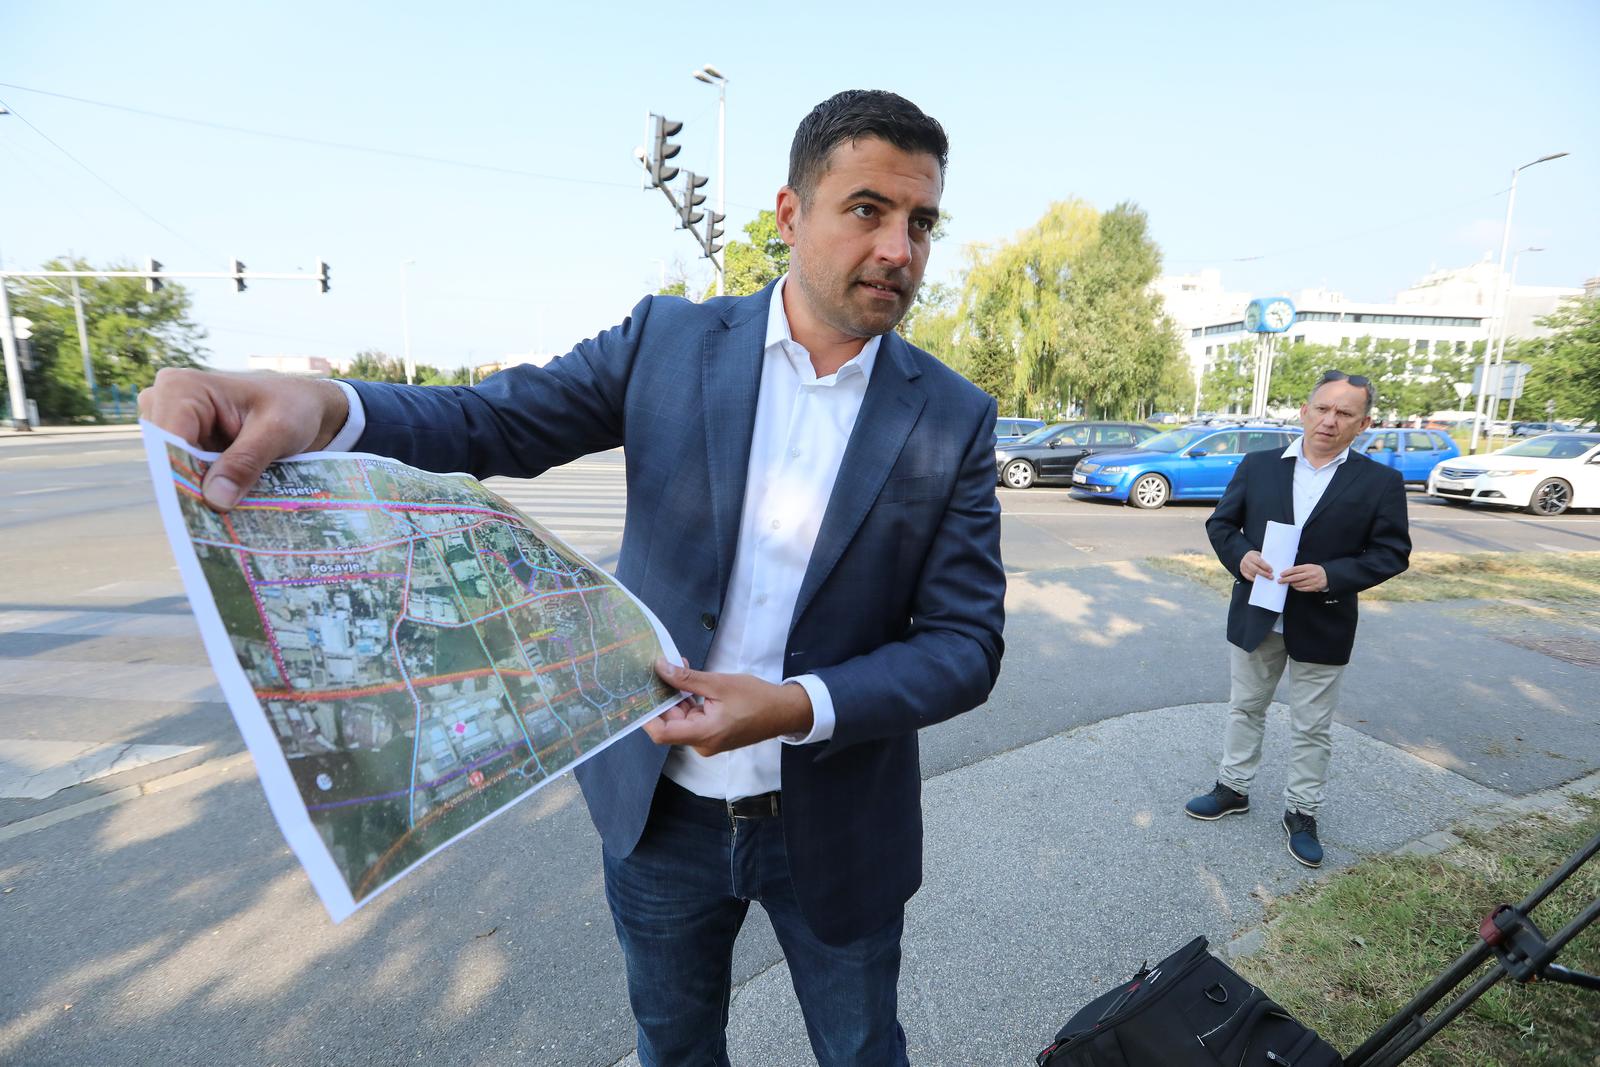 Osim predstavljanja prometnog plana Socijaldemokrata, Bernardić je kritizirao i gradonačelnika Tomislava Tomaševića. 
